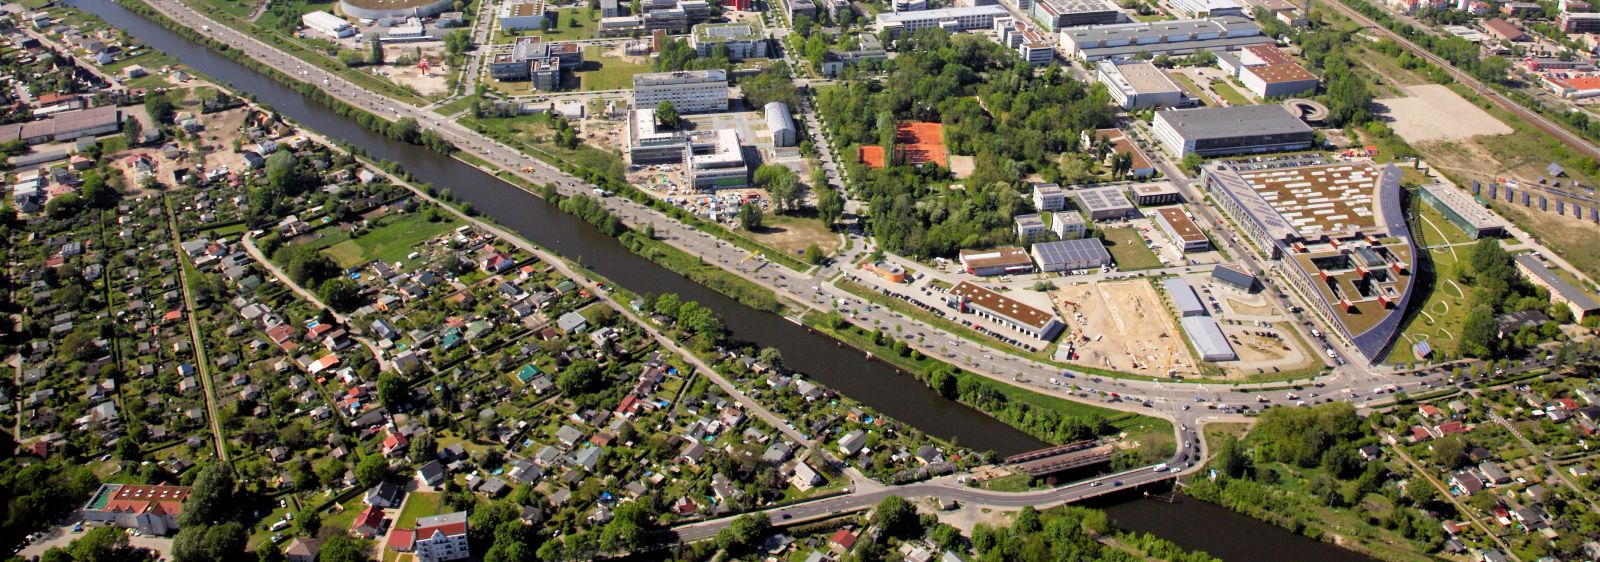 Aerial view of the Adlershof site in May 2013